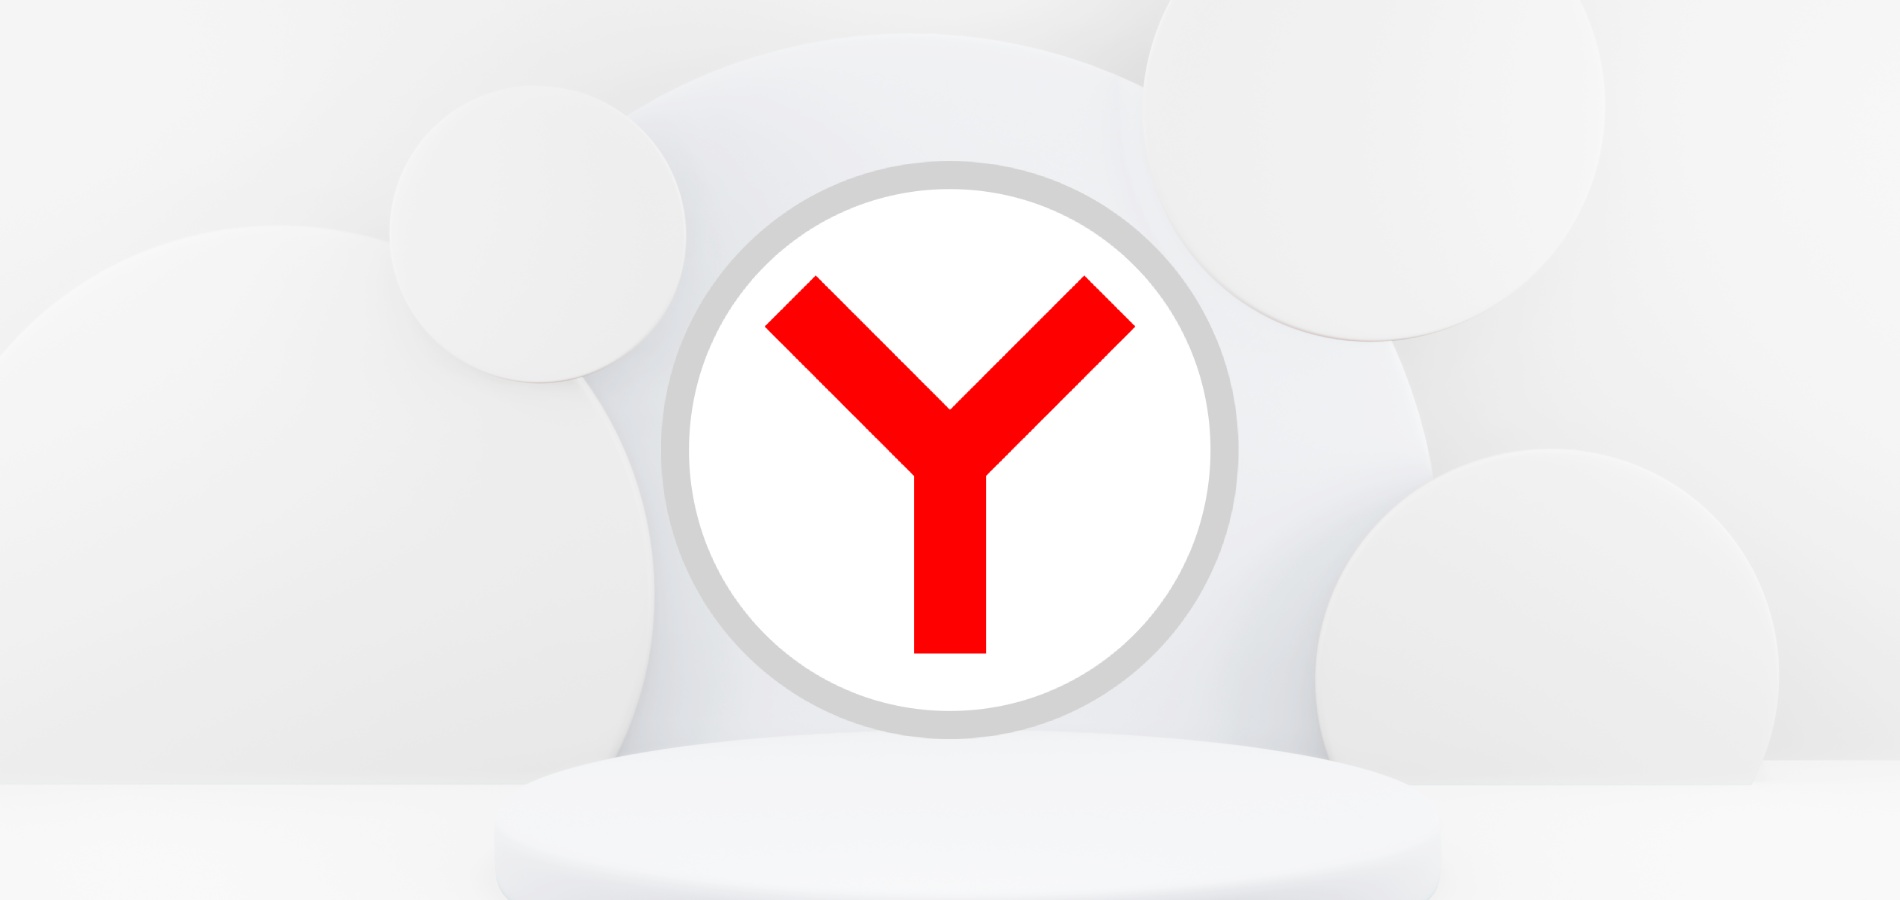 Яндекс обновил дизайн браузера на мобильных устройствах